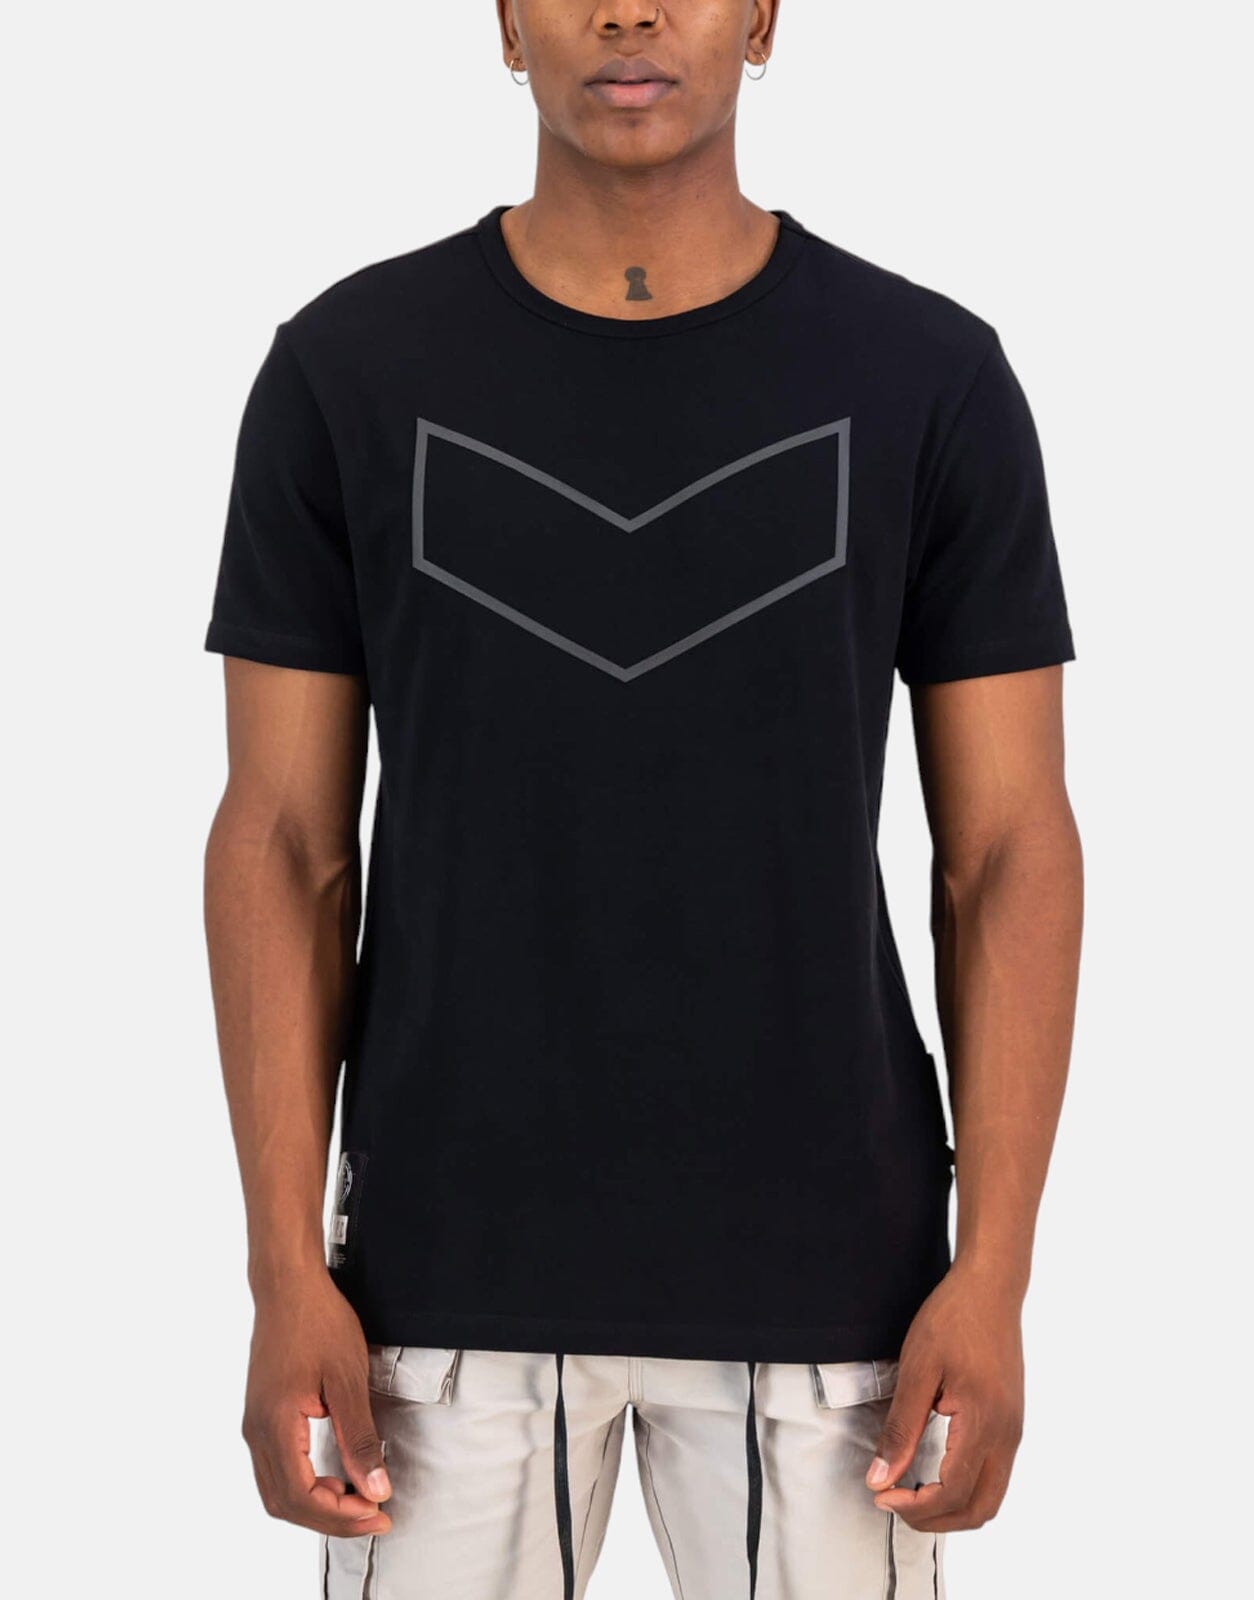 SPCC Suske Black T-Shirt - Subwear